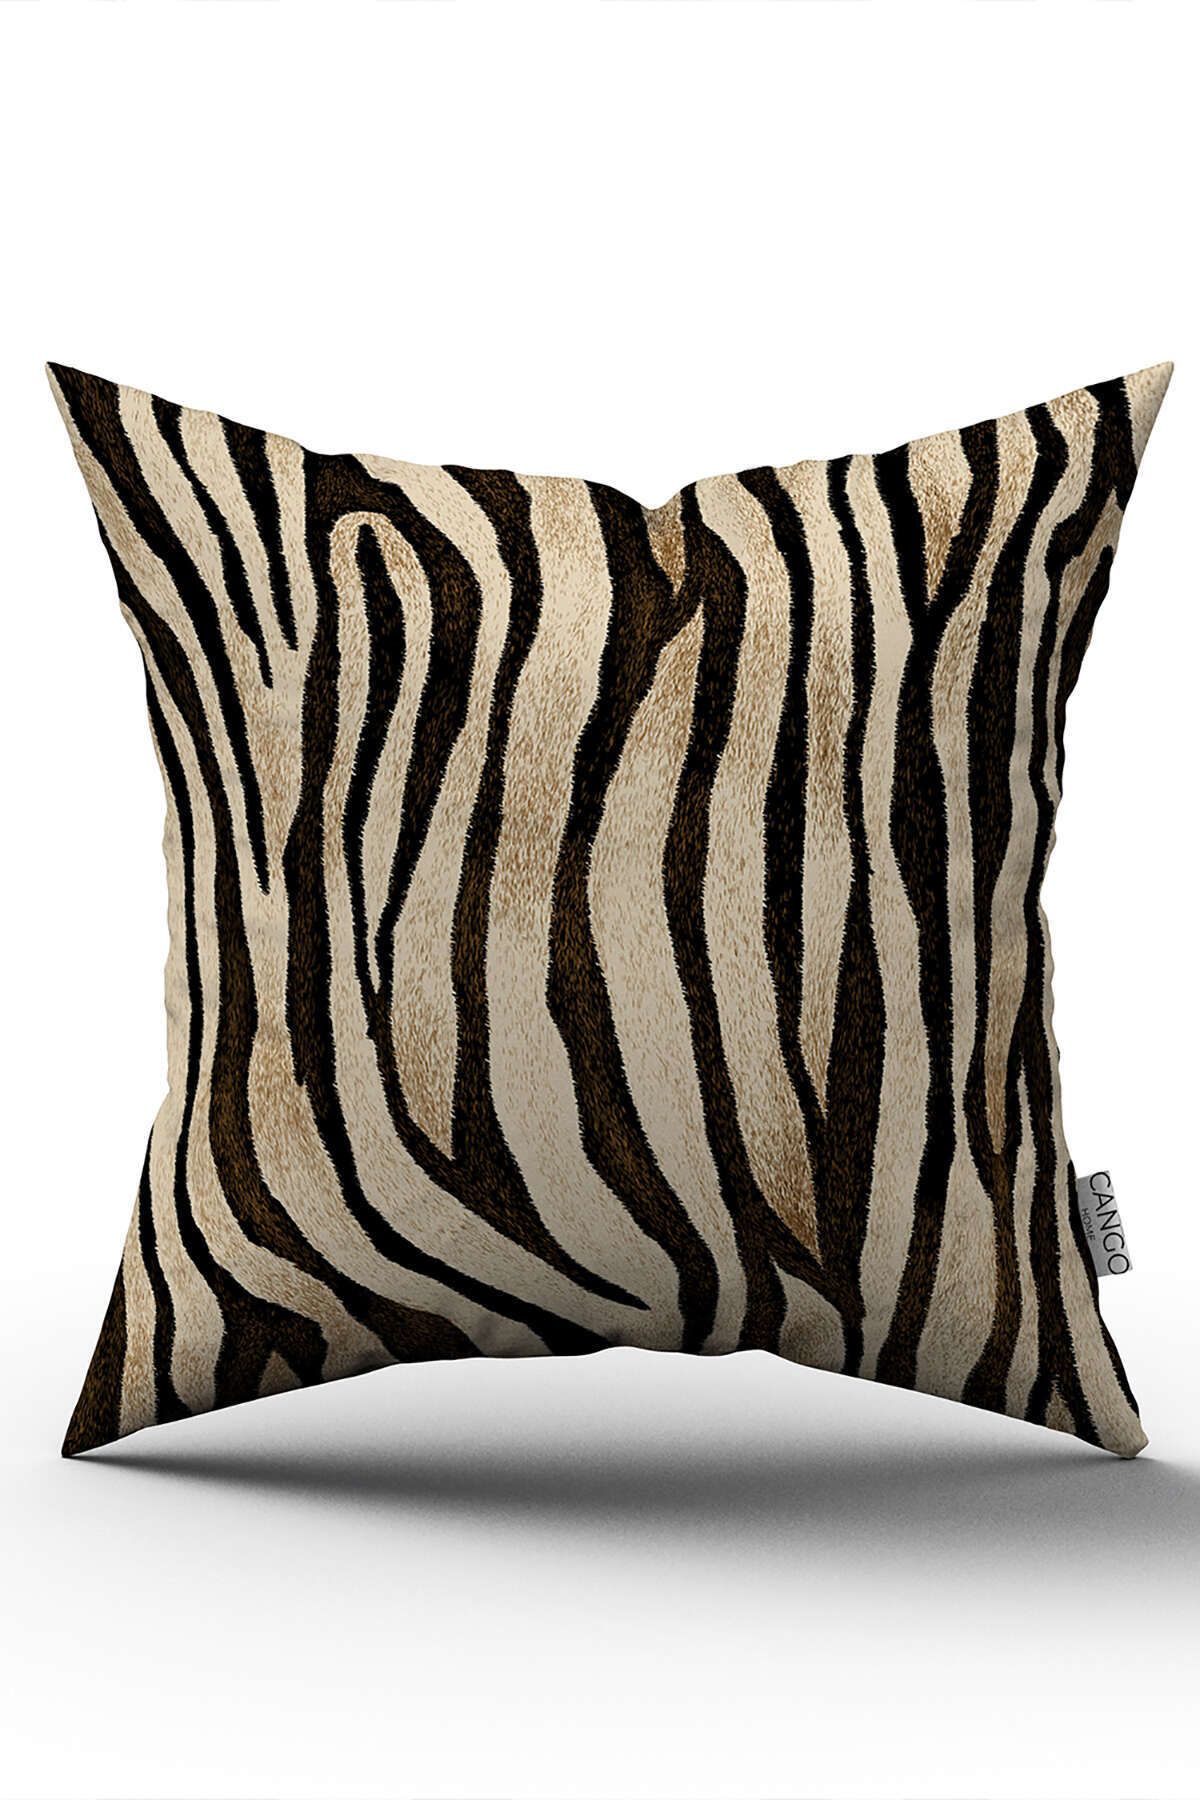 Cango Home Çift Taraflı Kahverengi Siyah Zebra Desenli Dijital Baskı Kırlent Yastık Kılıfı - Cgh360-ct